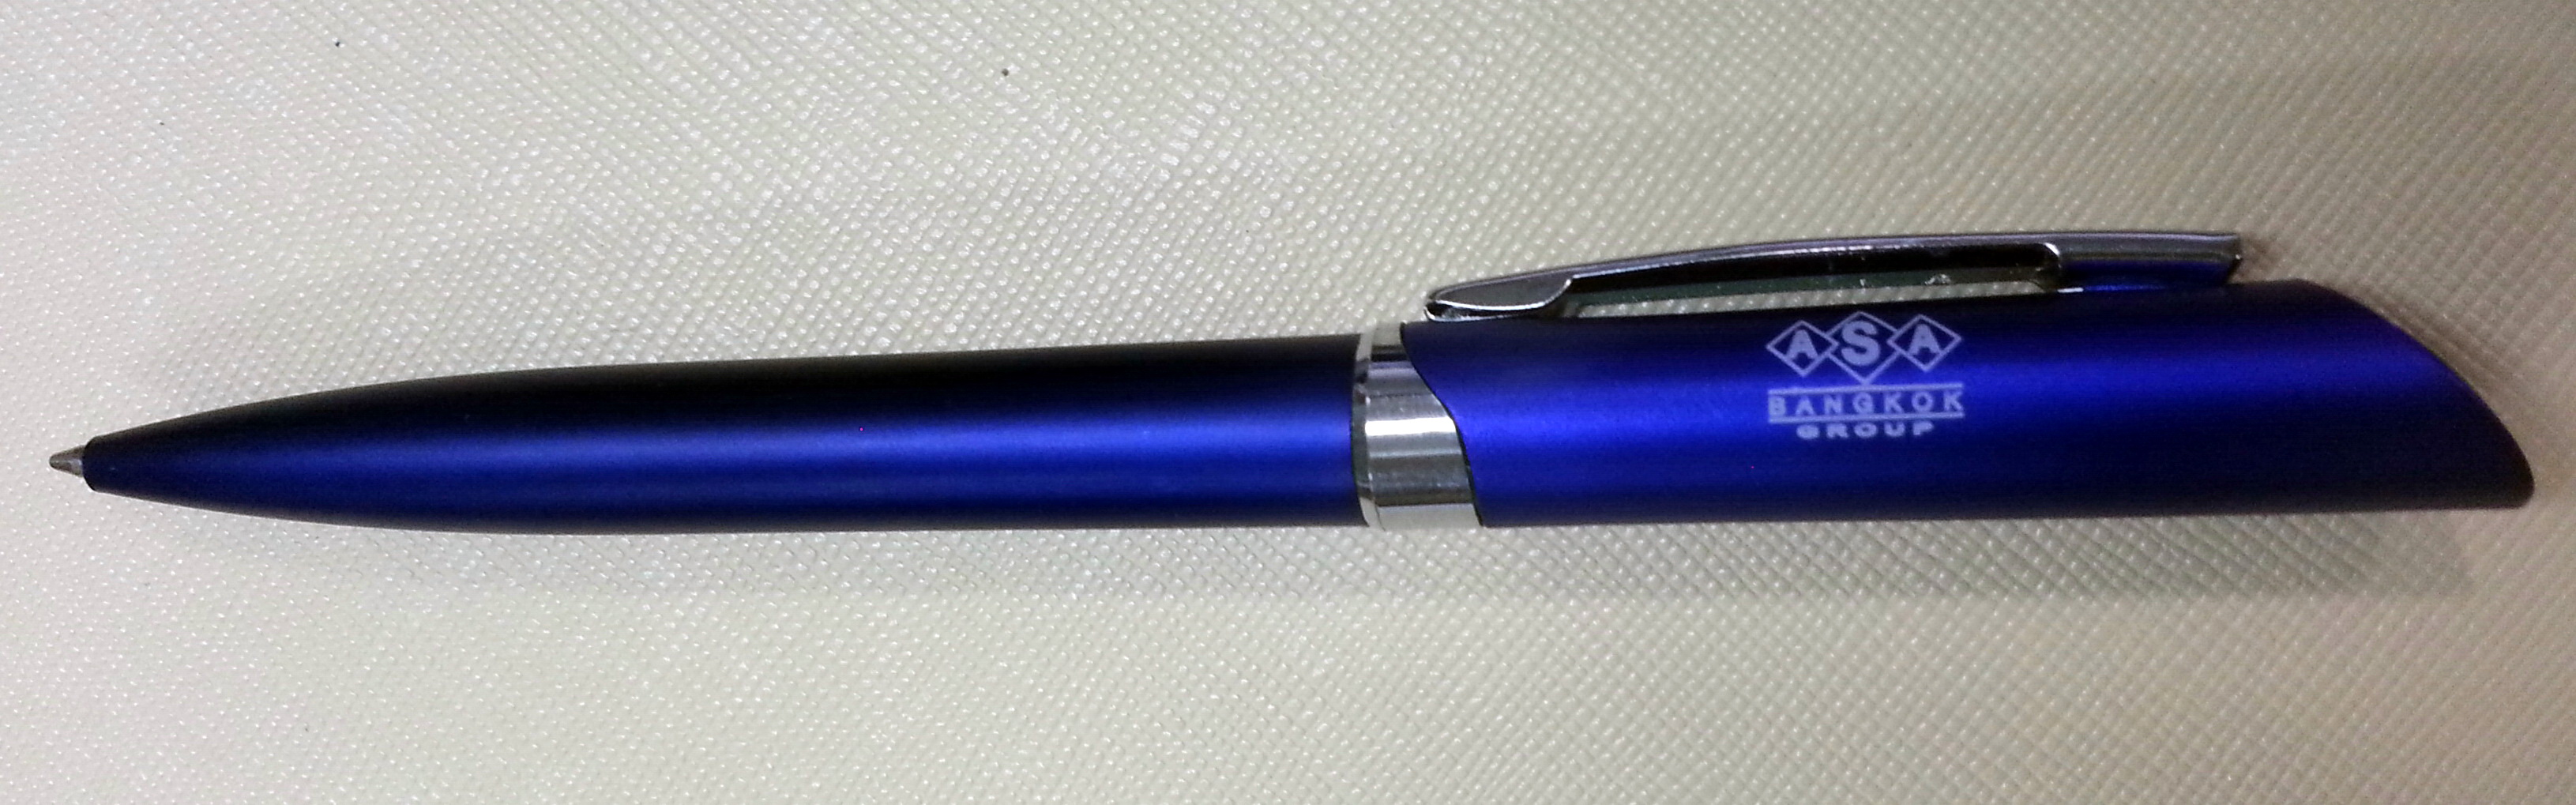 ปากกา A.S.A